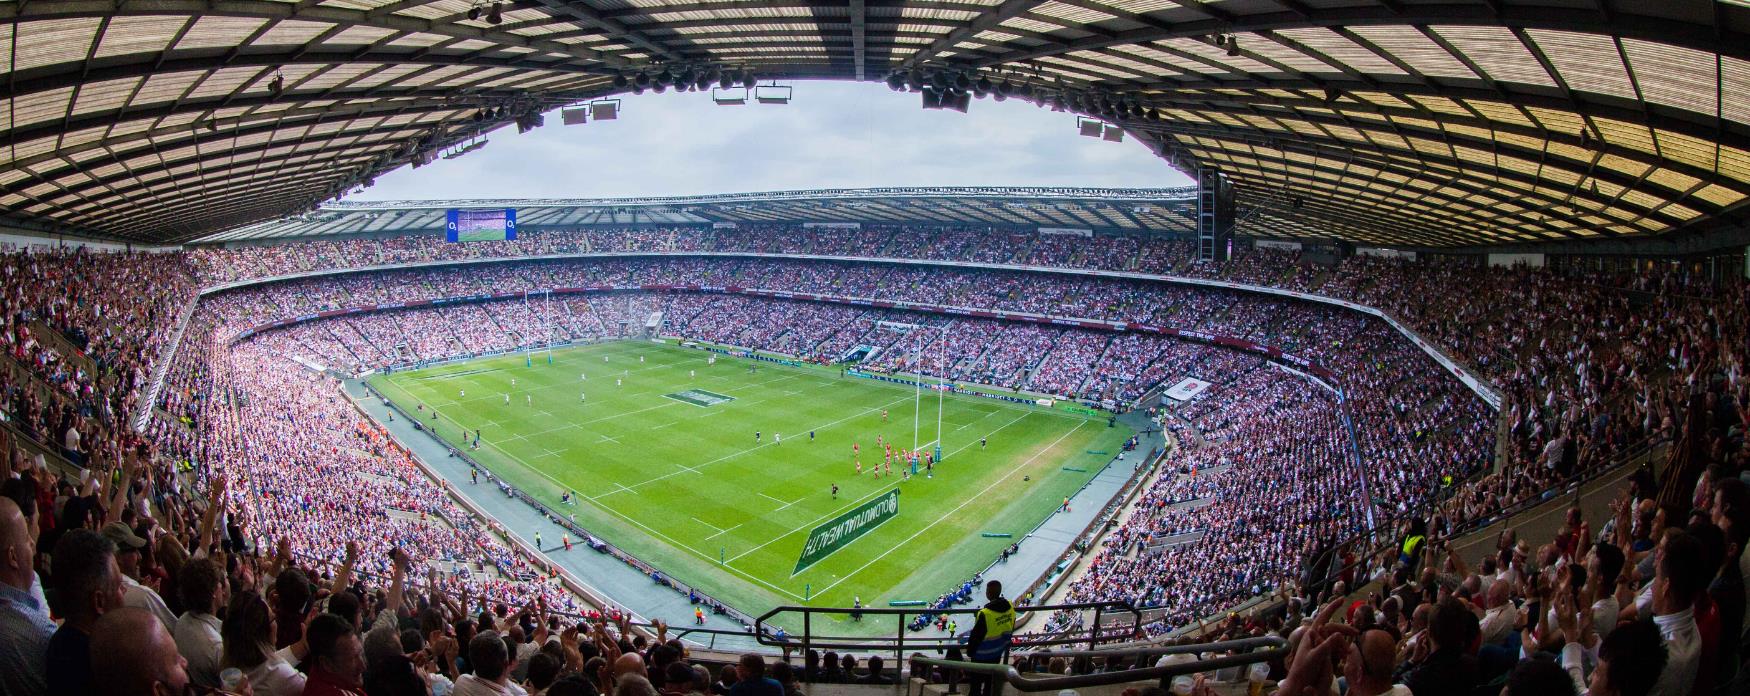 View of Twickenham Stadium at Rugby matches